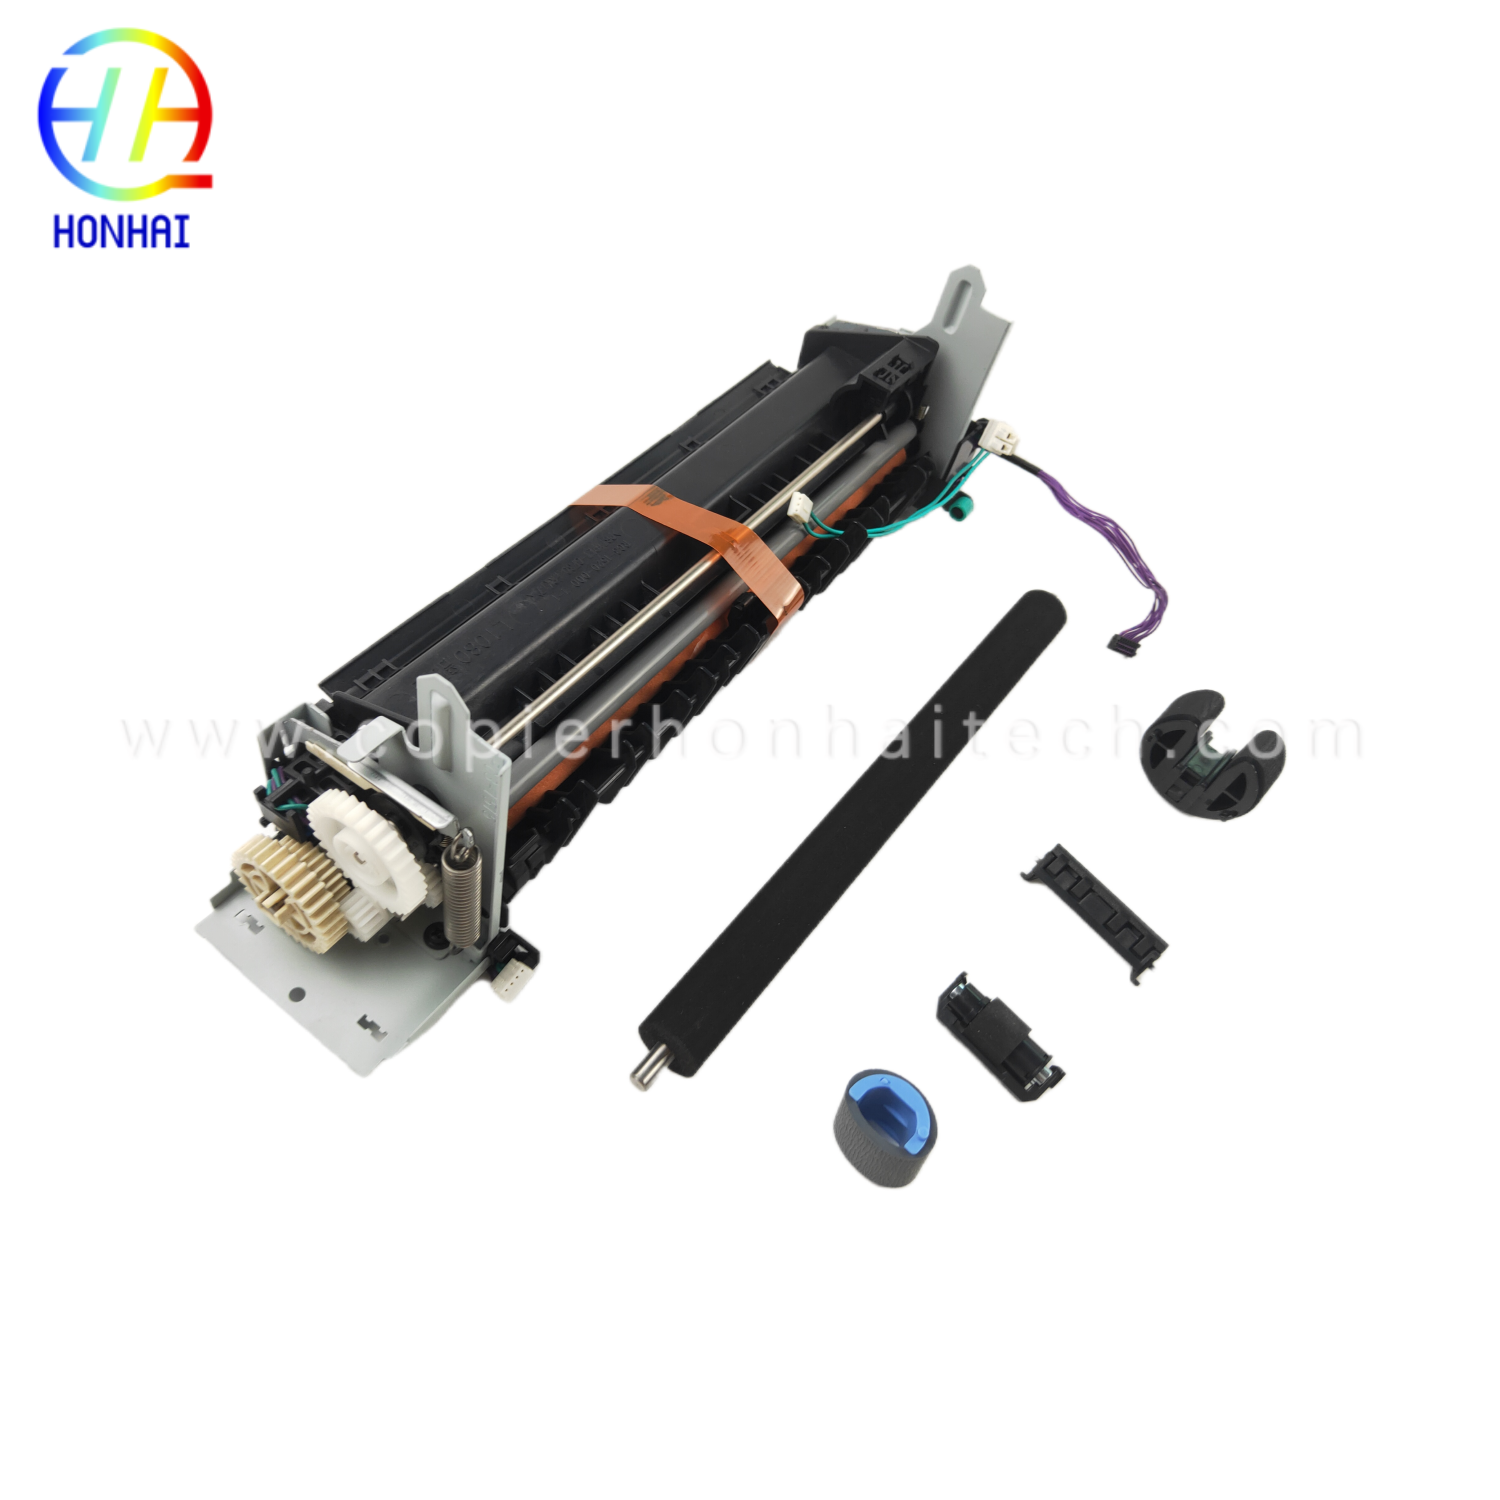 https://www.copierhonhaitech.com/original-95-new-maintenance-kit-for-hp-laserjet-pro-400-color-mfp-m475dn-product/